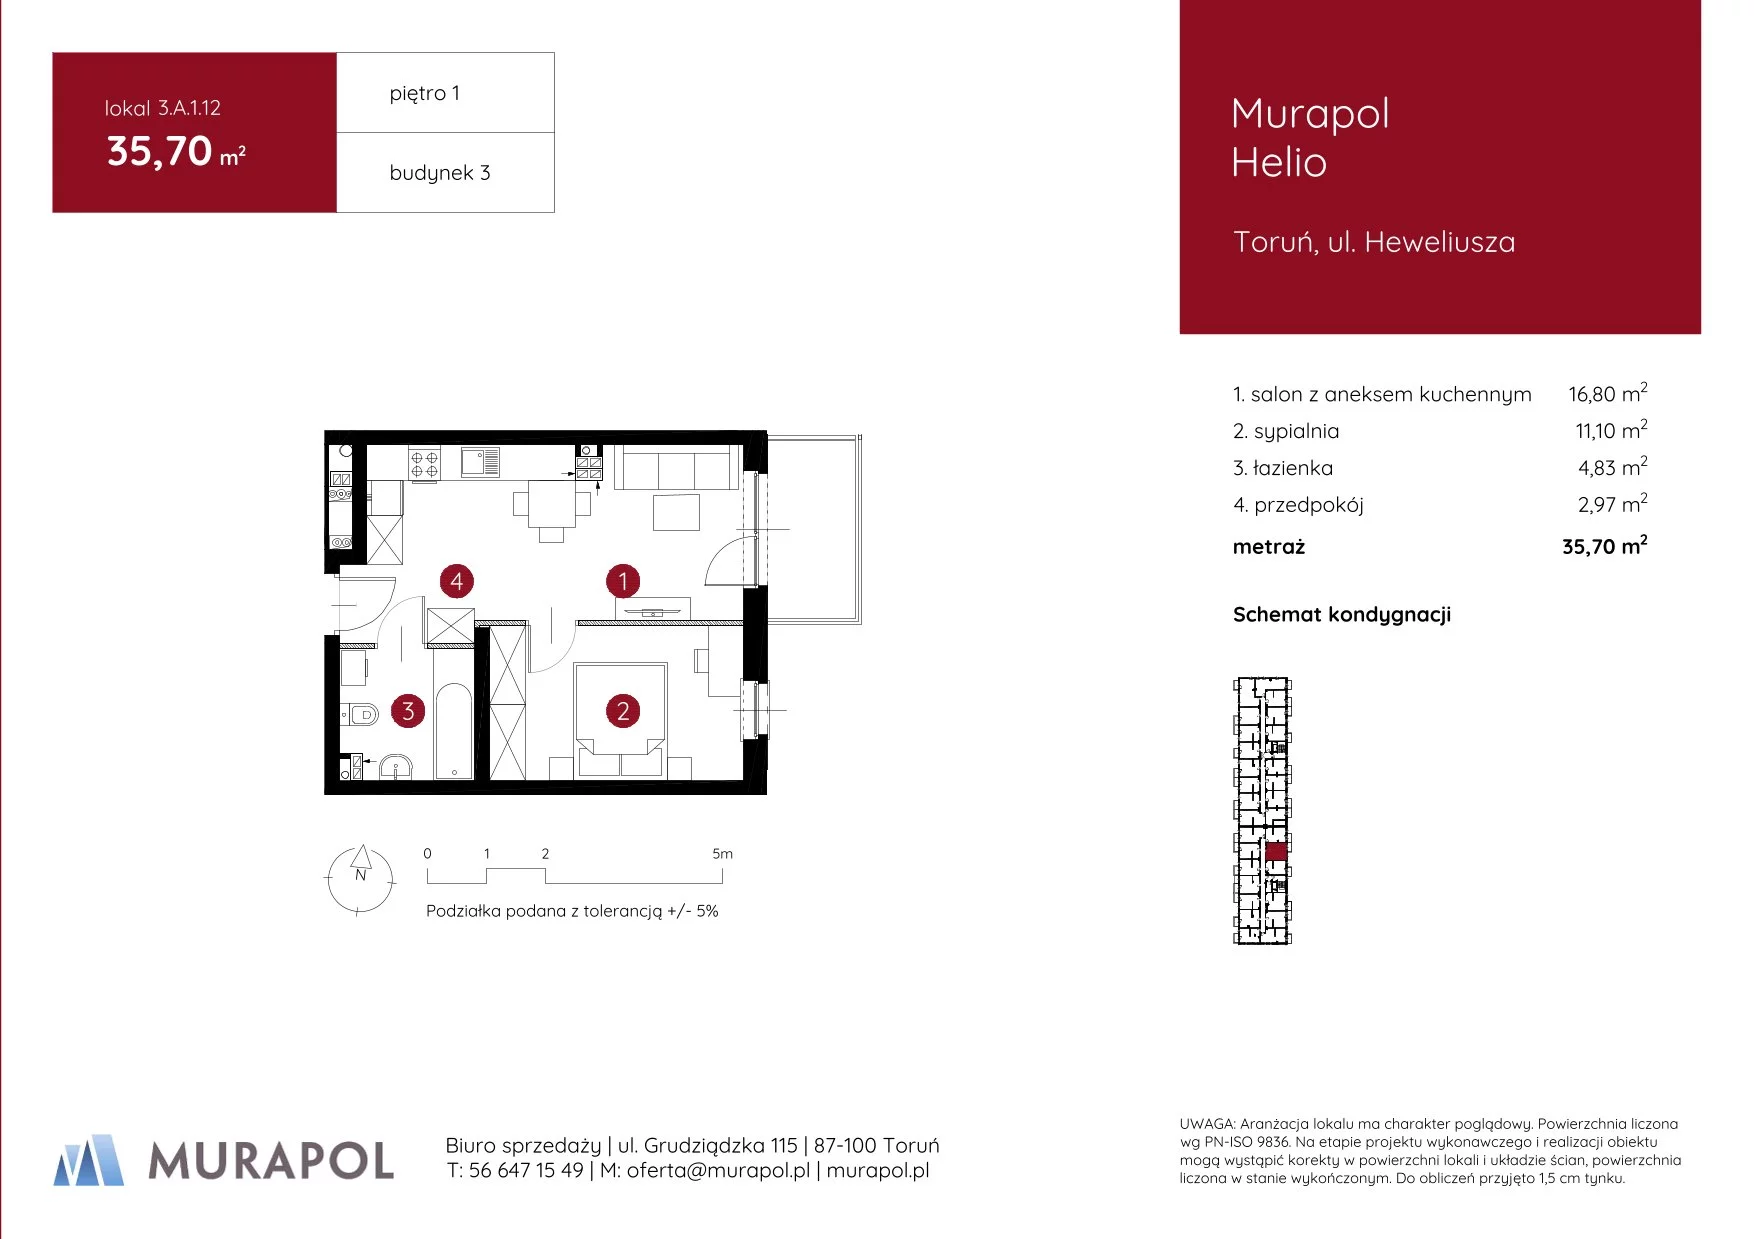 Mieszkanie 35,70 m², piętro 1, oferta nr 3.A.1.12, Murapol Helio, Toruń, Wrzosy, JAR, ul. Heweliusza